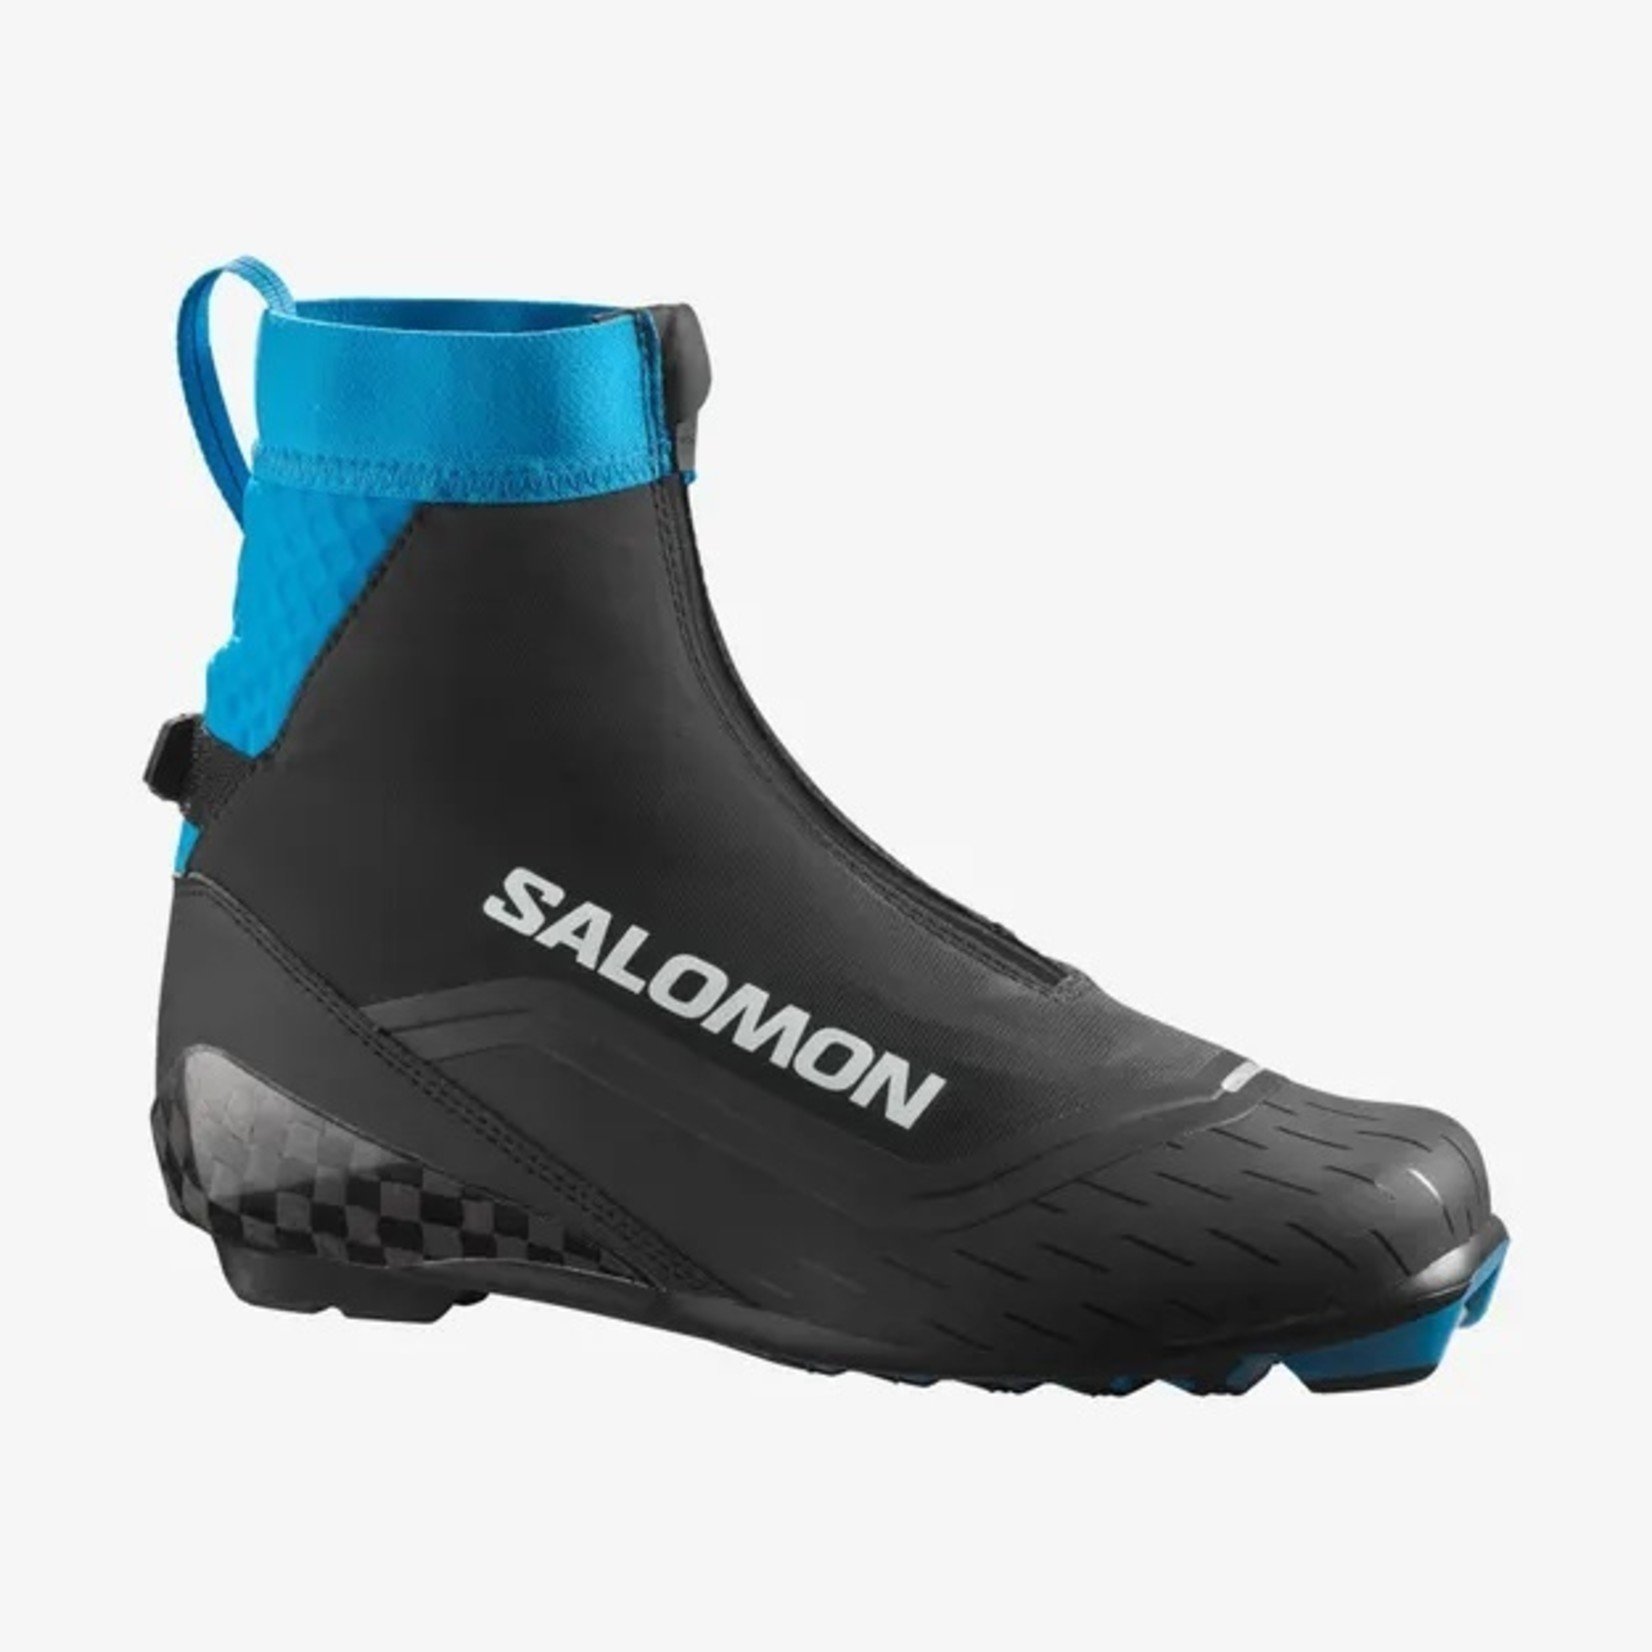 SALOMON SALOMON, S/Max Carbon Classic MV Boot